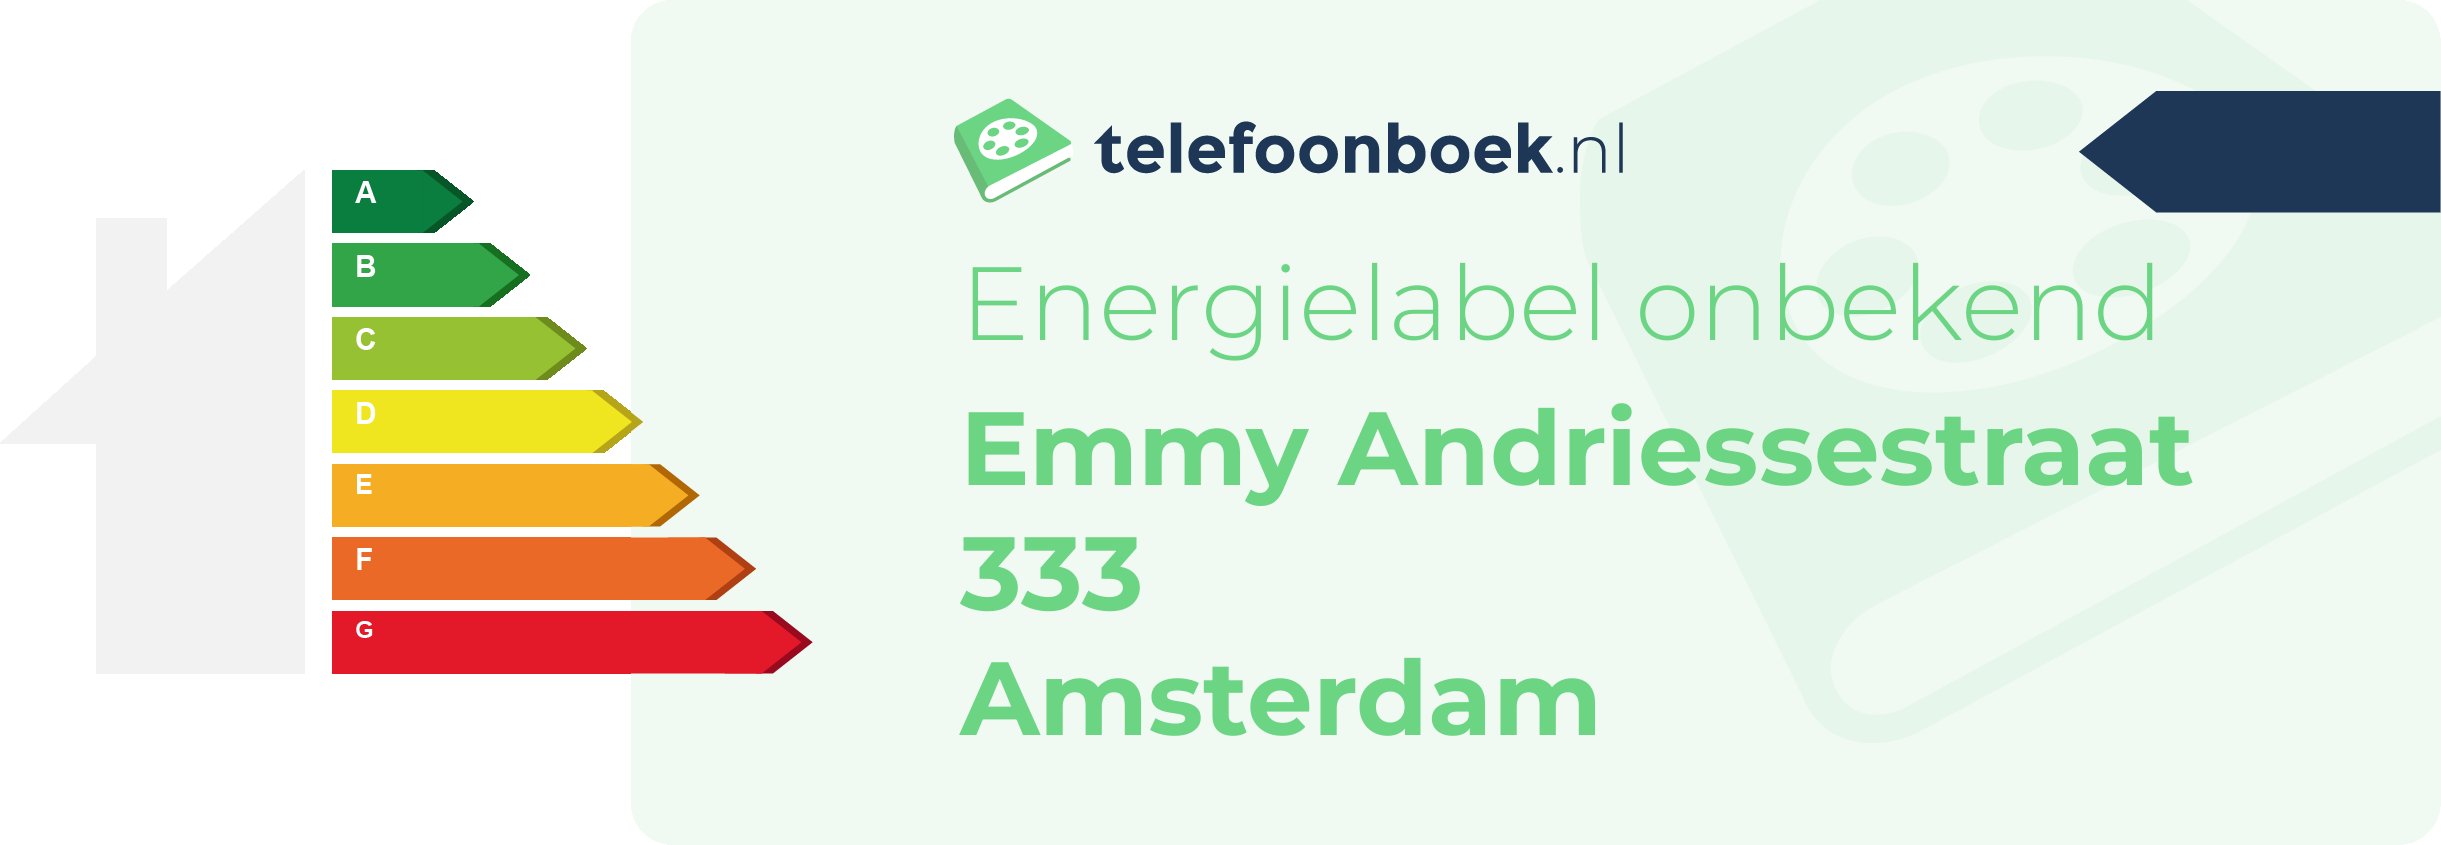 Energielabel Emmy Andriessestraat 333 Amsterdam